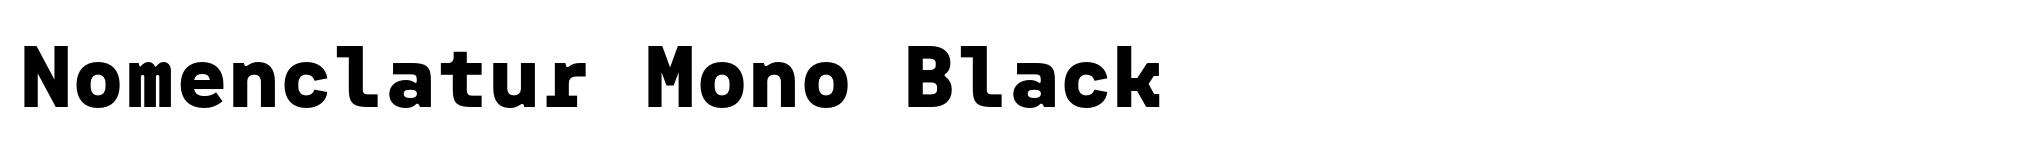 Nomenclatur Mono Black image